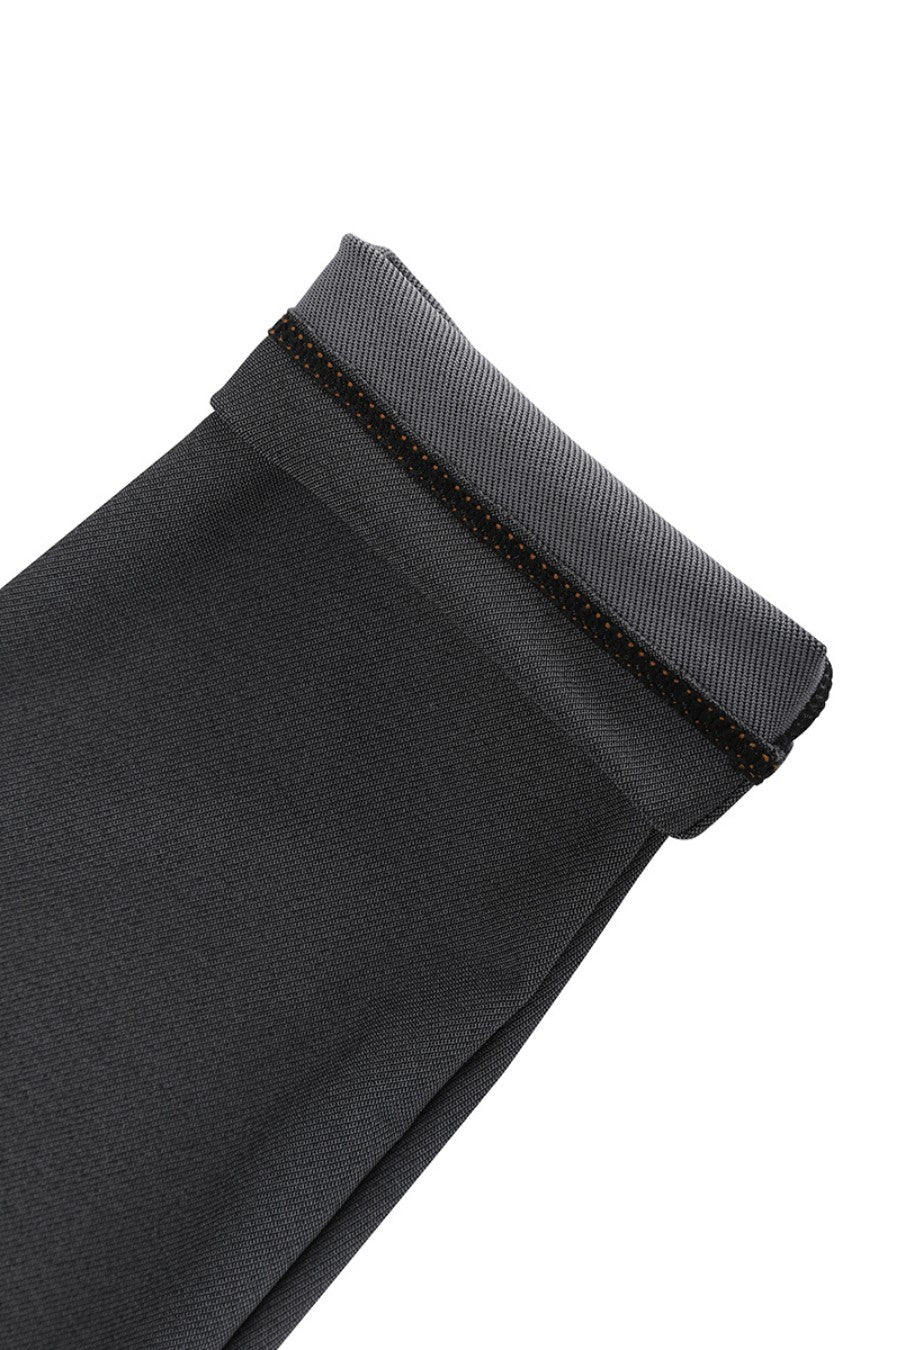 Keira Shaping Leggings - Black Wash Contour Clothing